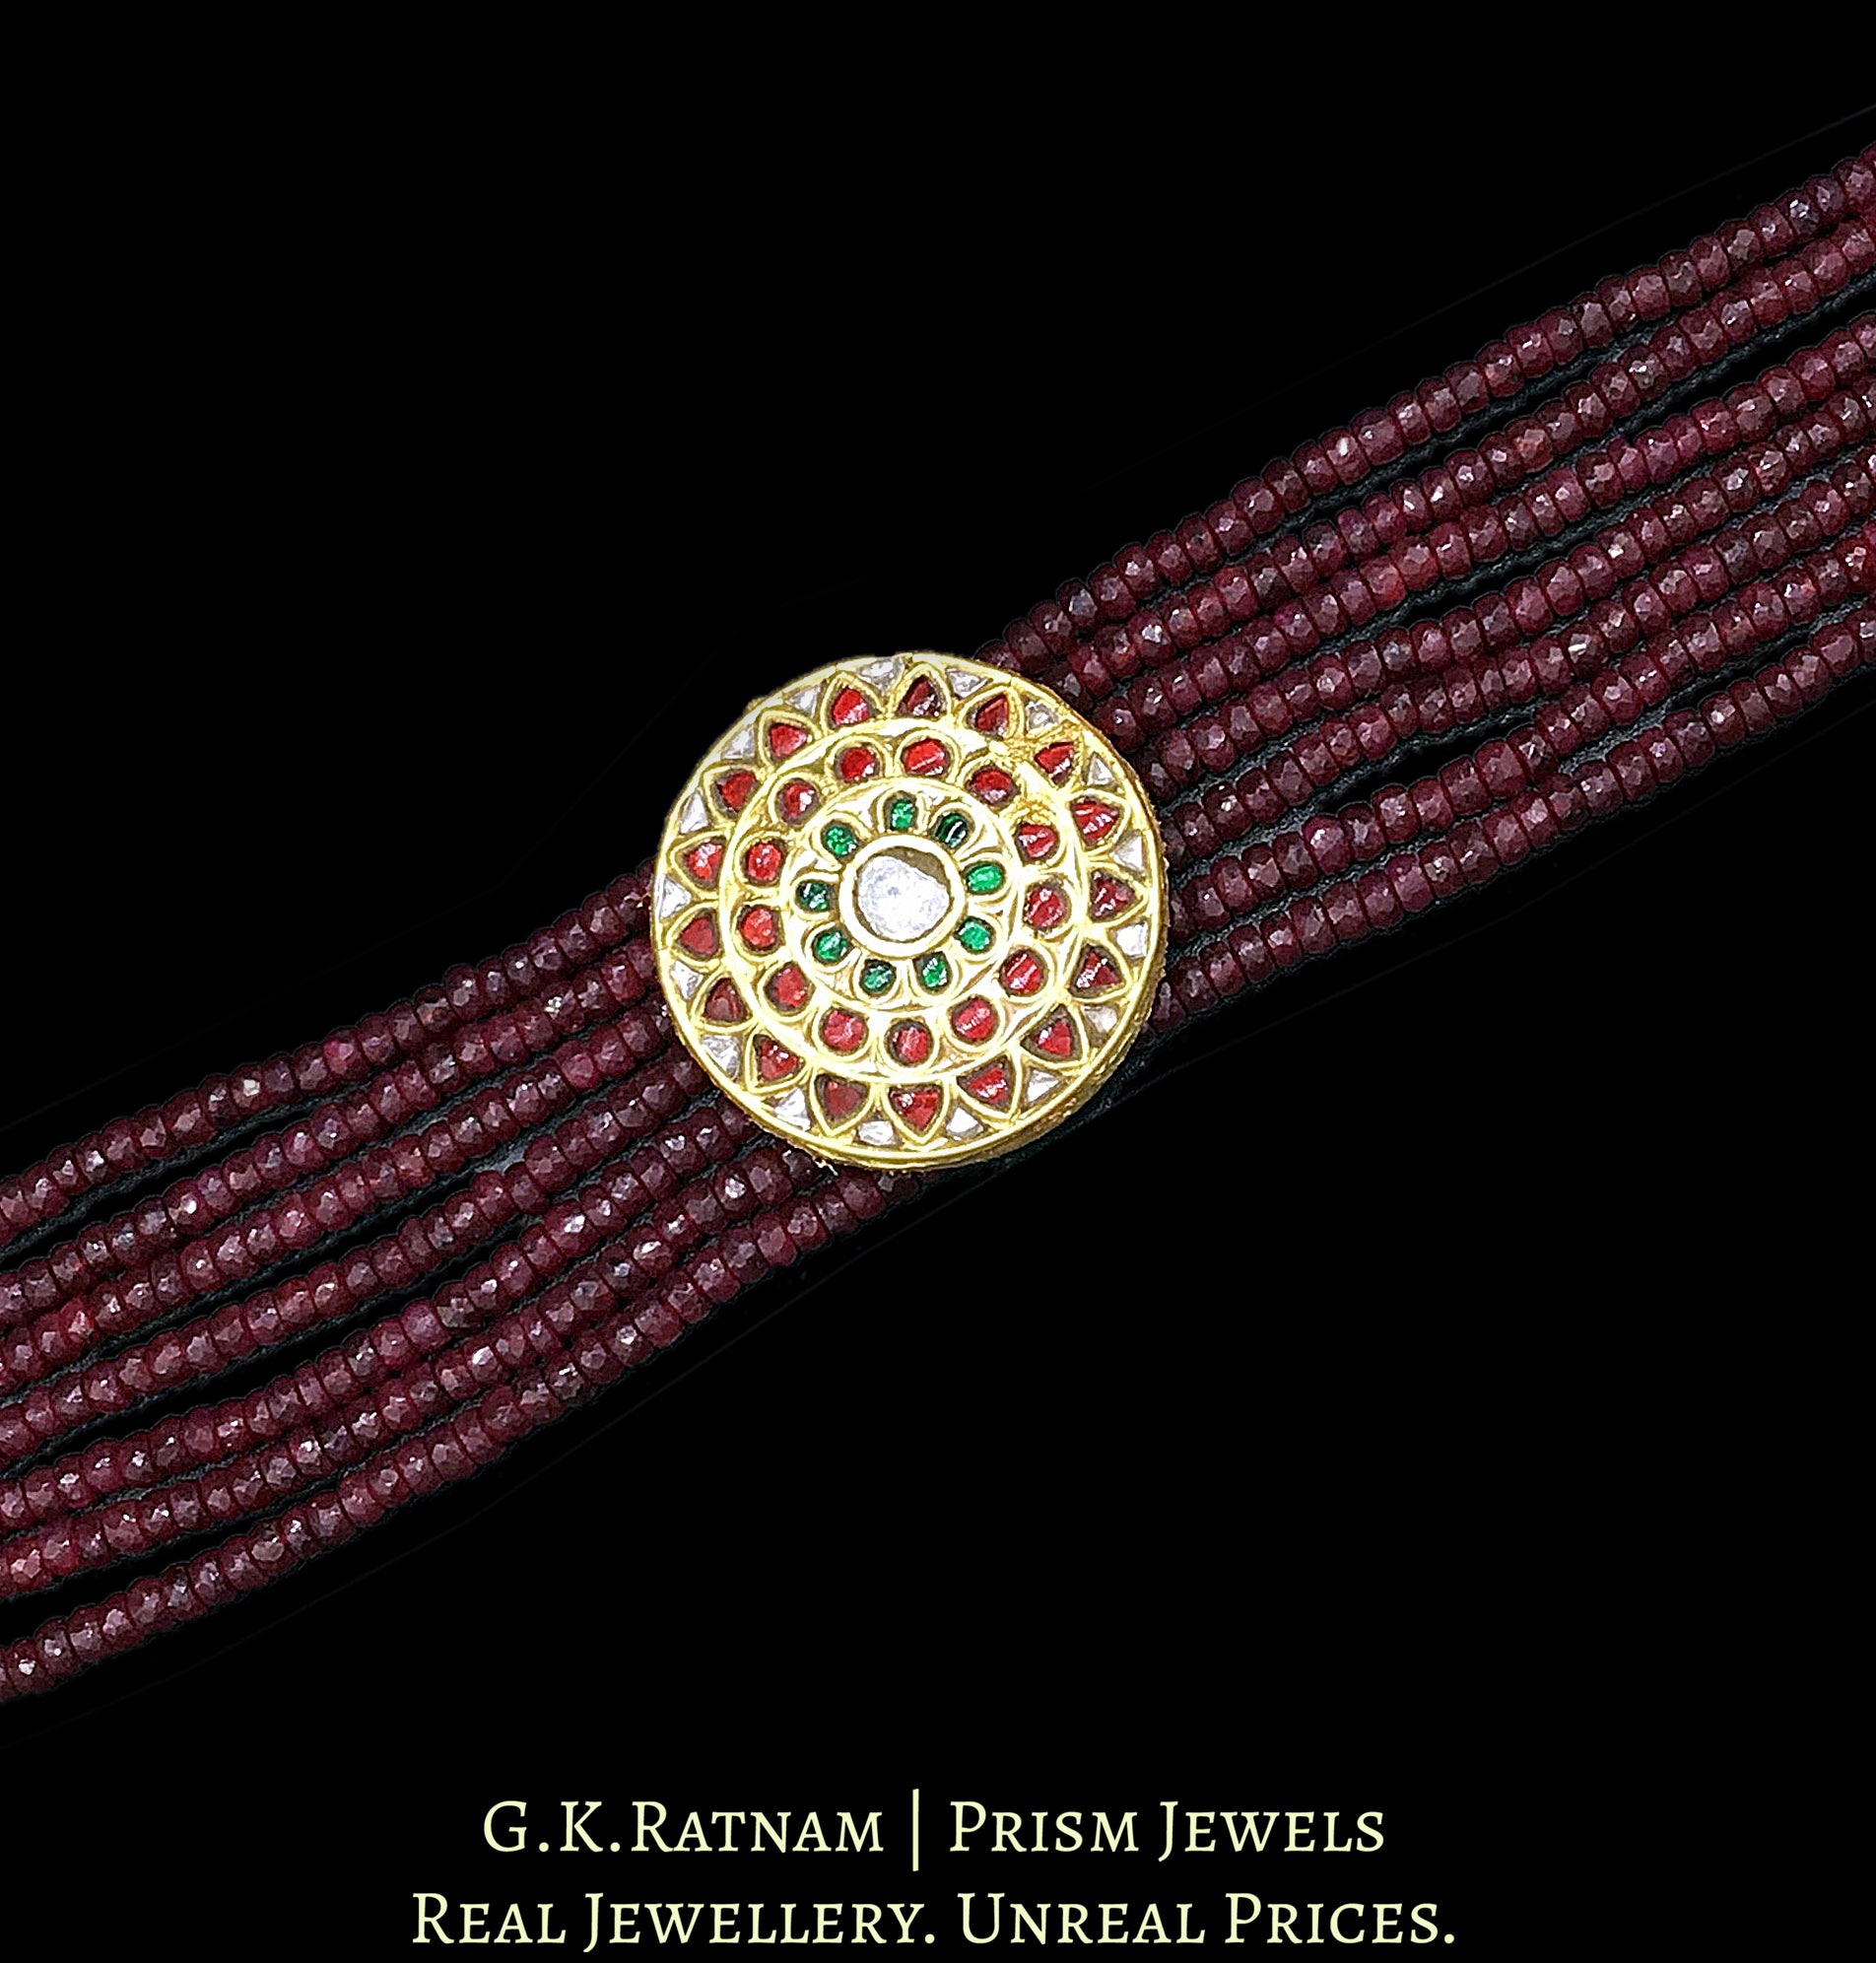 23k Gold and Diamond Polki watch-like Bracelet with Rubies